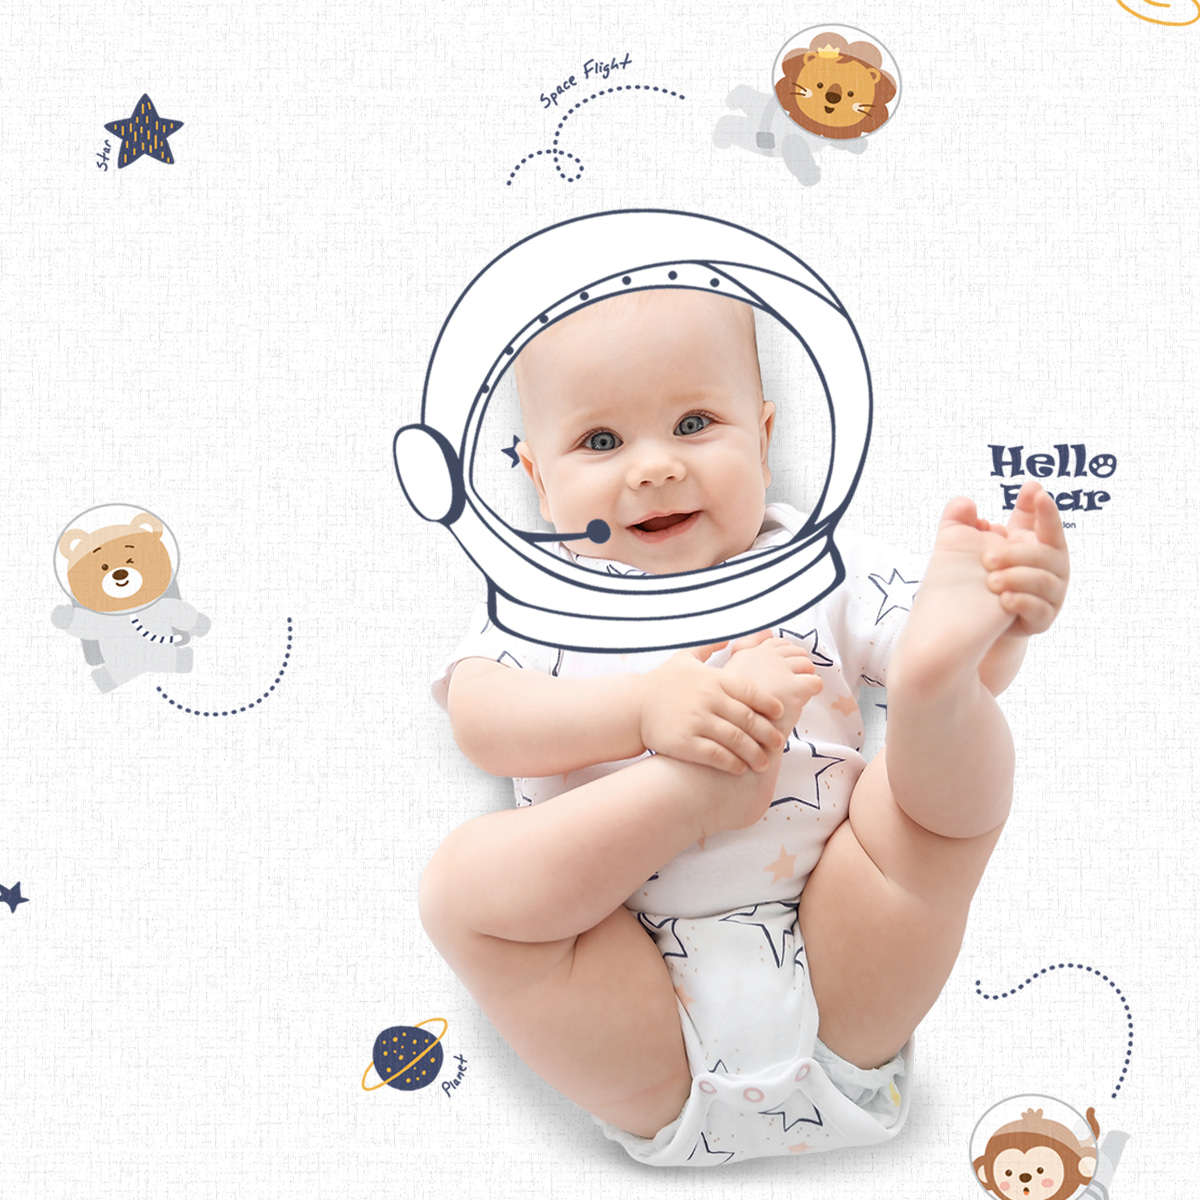 아소방프라임 유아 놀이방매트 헬로베어 우주비행사 210